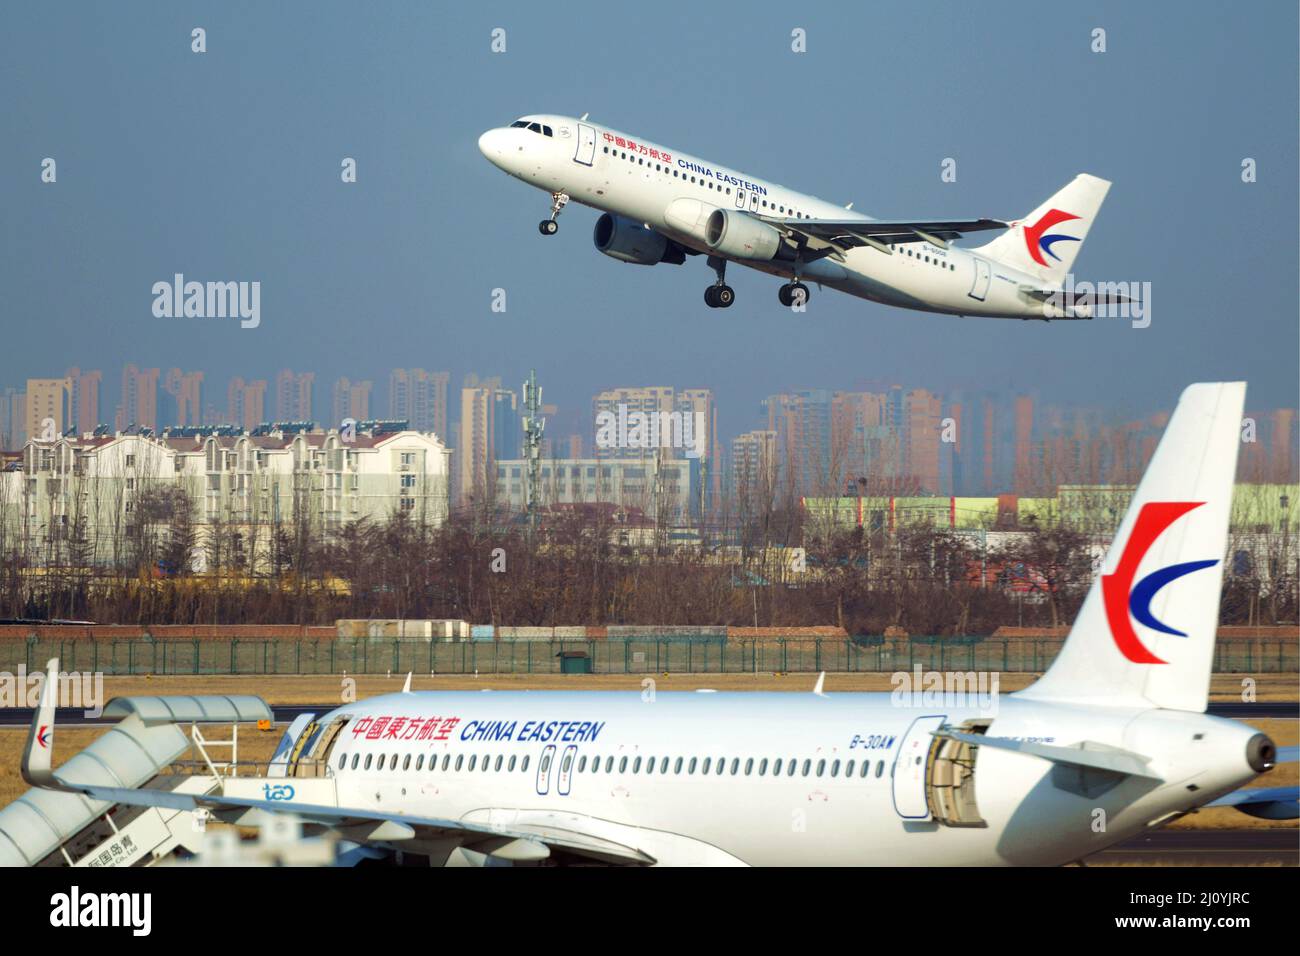 QINGDAO, CHINE - le 21 FÉVRIER 2021 - Un avion de transport de passagers China Eastern Airlines part de l'aéroport de Liuting à Qingdao, dans l'est de la Chine Shandong pro Banque D'Images